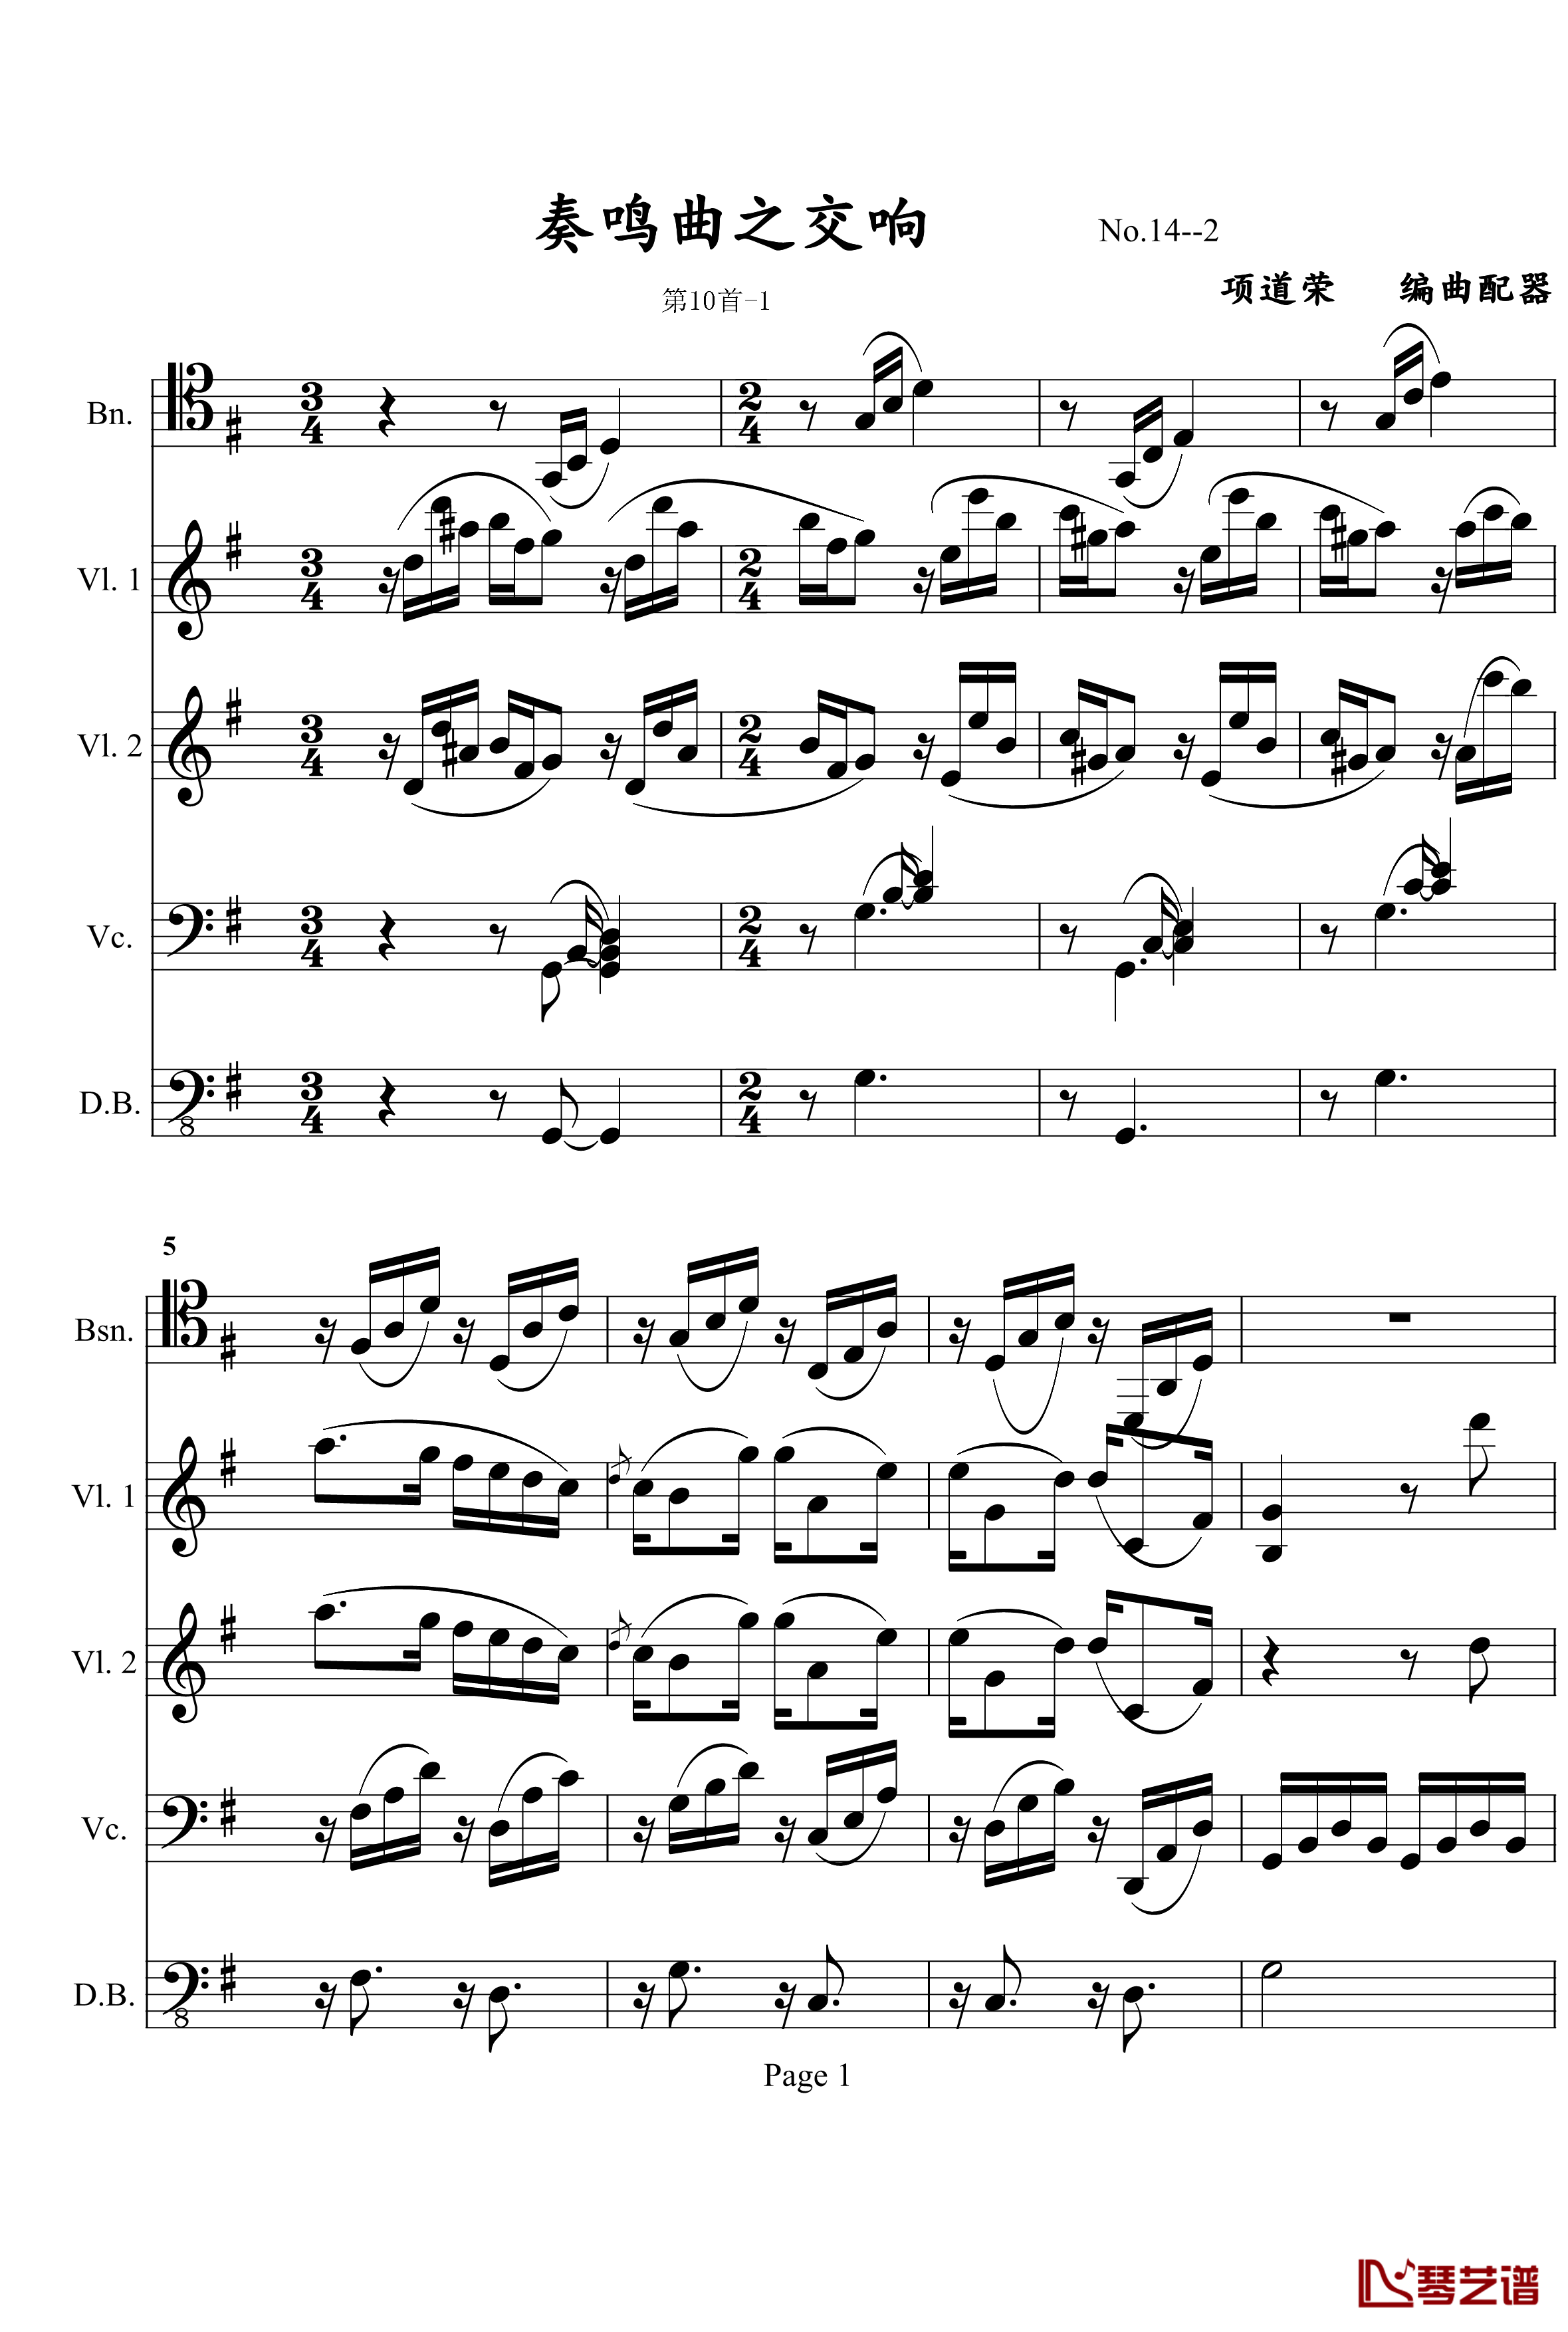 奏鸣曲之交响钢琴谱- 第十首-Ⅰ-贝多芬-beethoven1